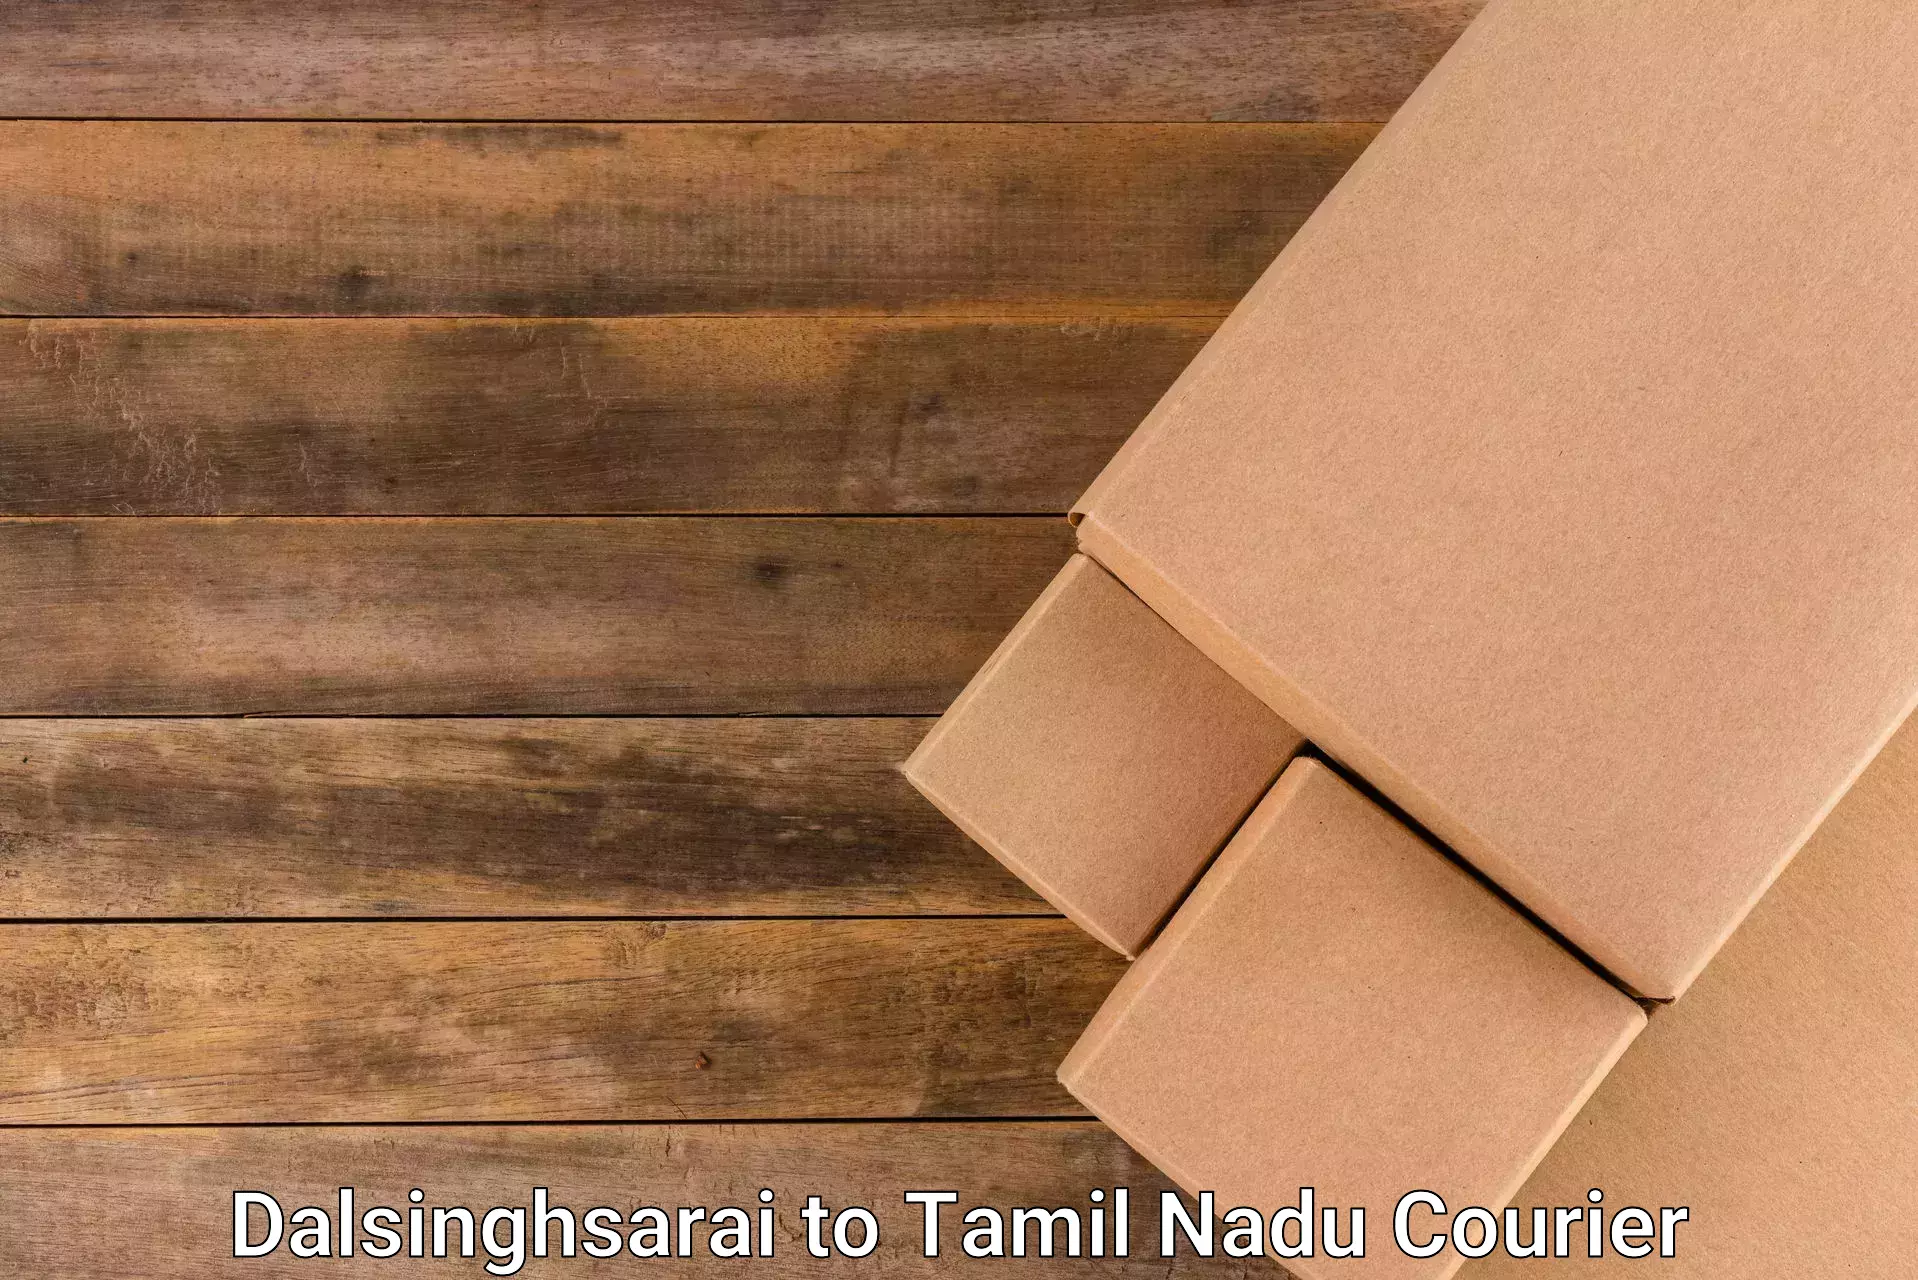 Streamlined logistics management Dalsinghsarai to Tamil Nadu